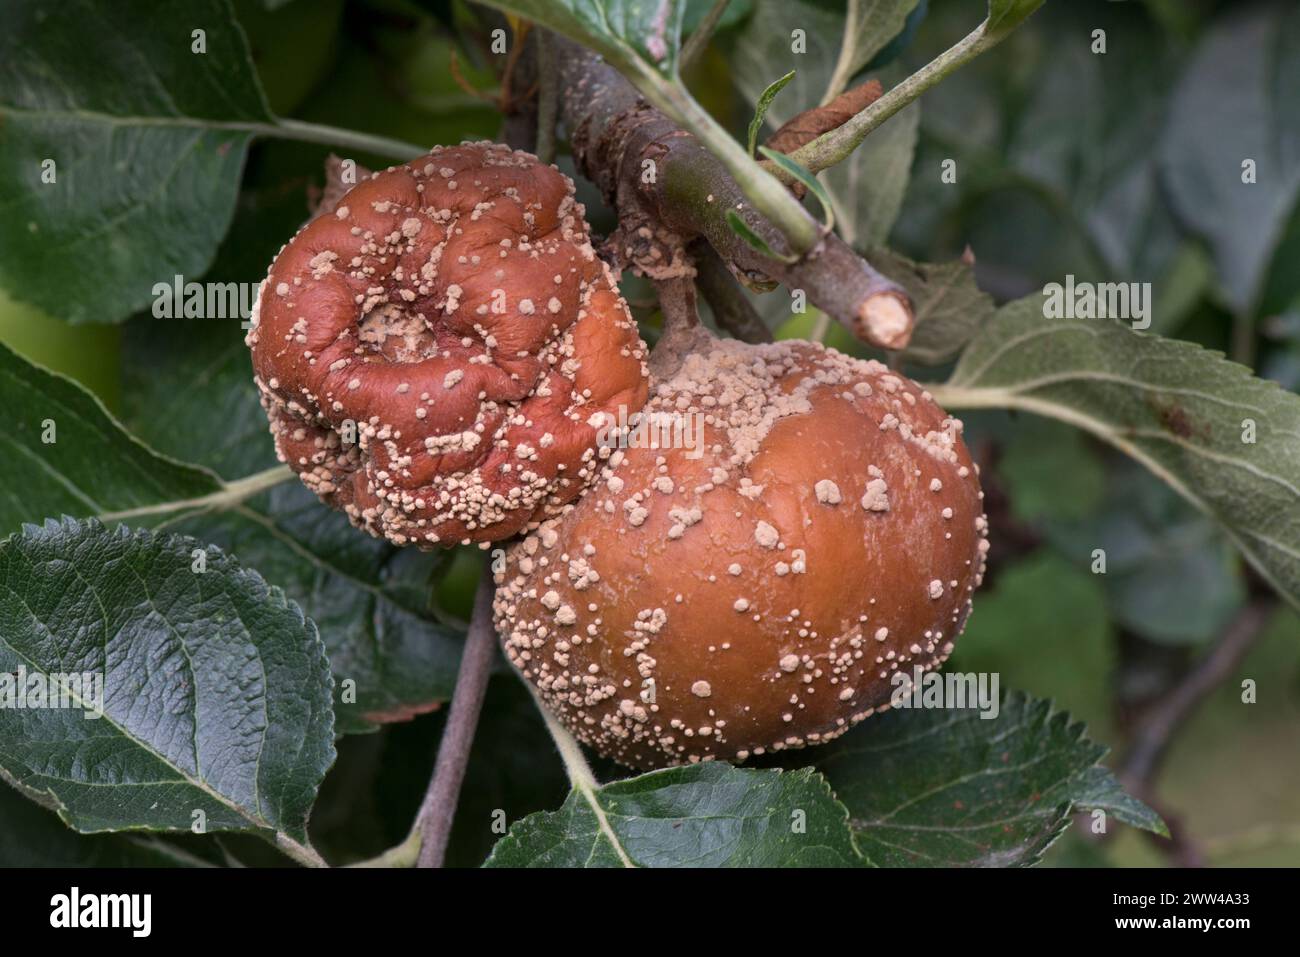 Cremeweiße Pilzpusteln der Braunfäule (Monilinia fructigena) auf verrottenden Äpfeln auf einem Obstbaum, Berkshire, August Stockfoto